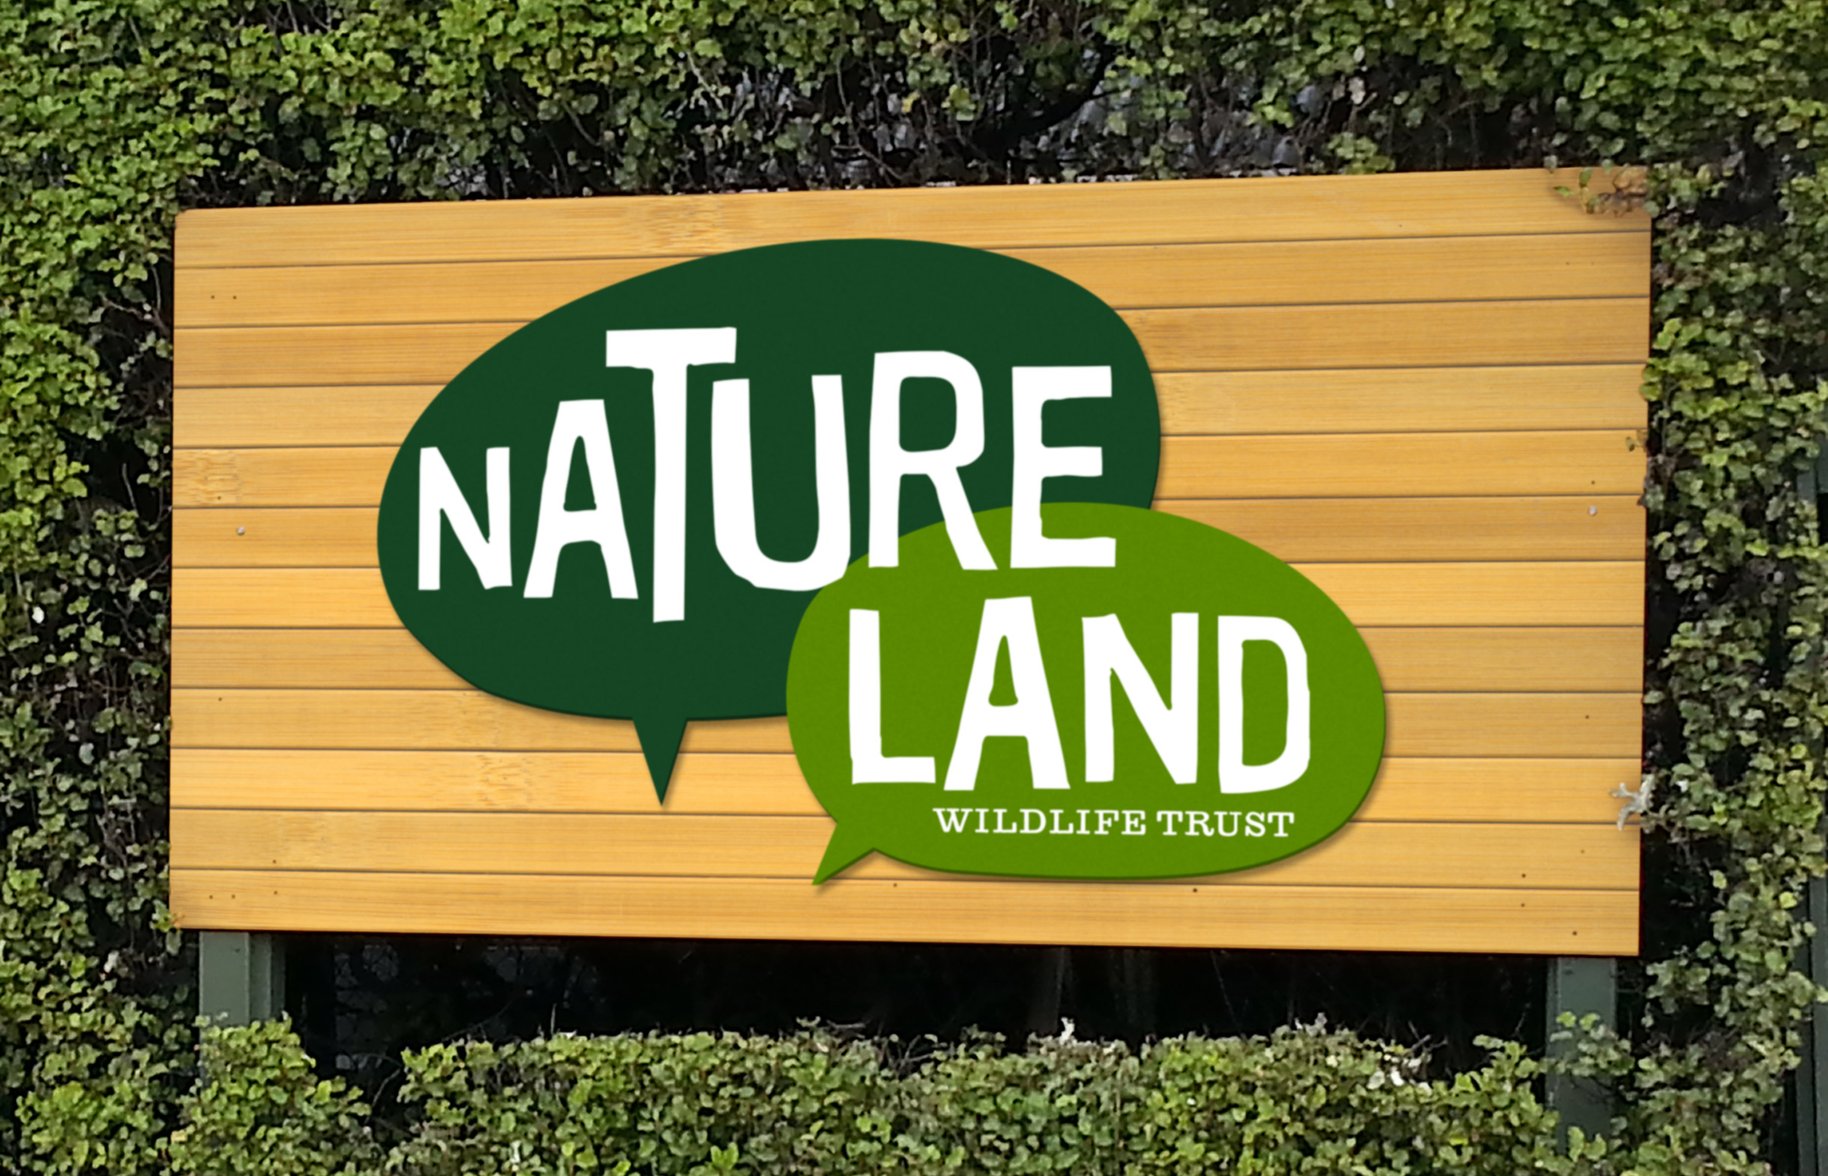 Natureland logo signage